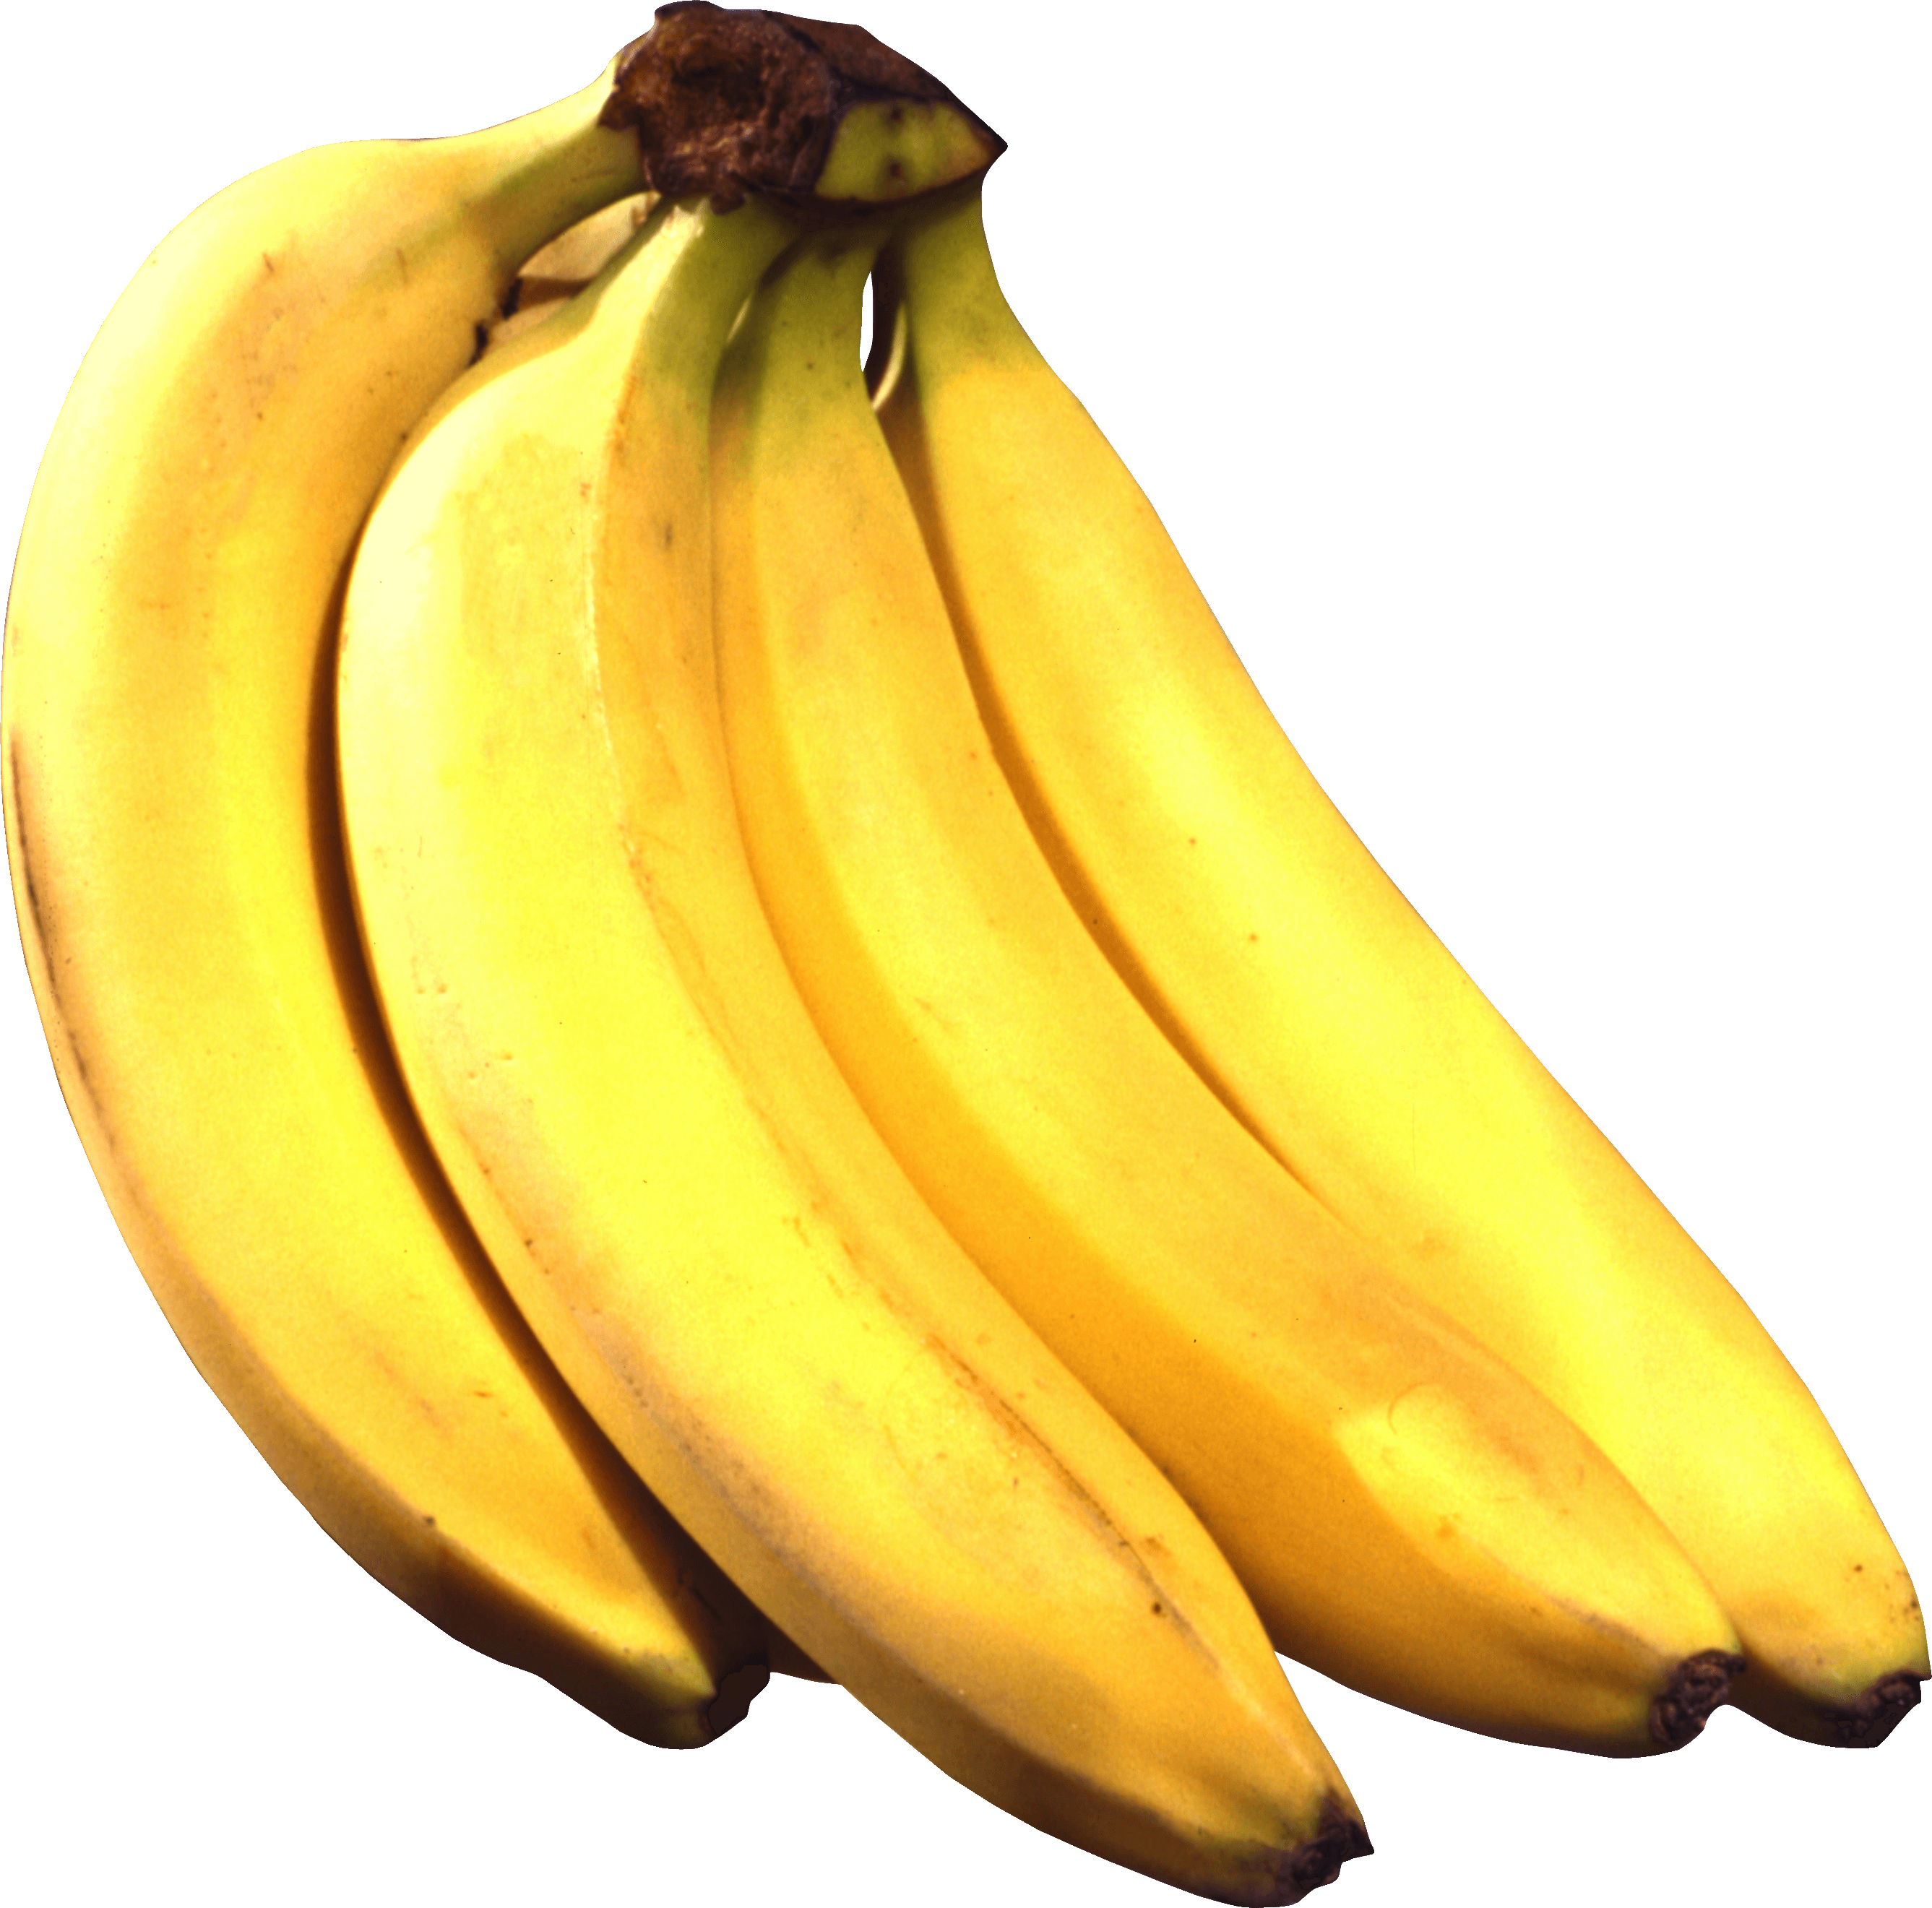 download banana png image png image pngimg #12961